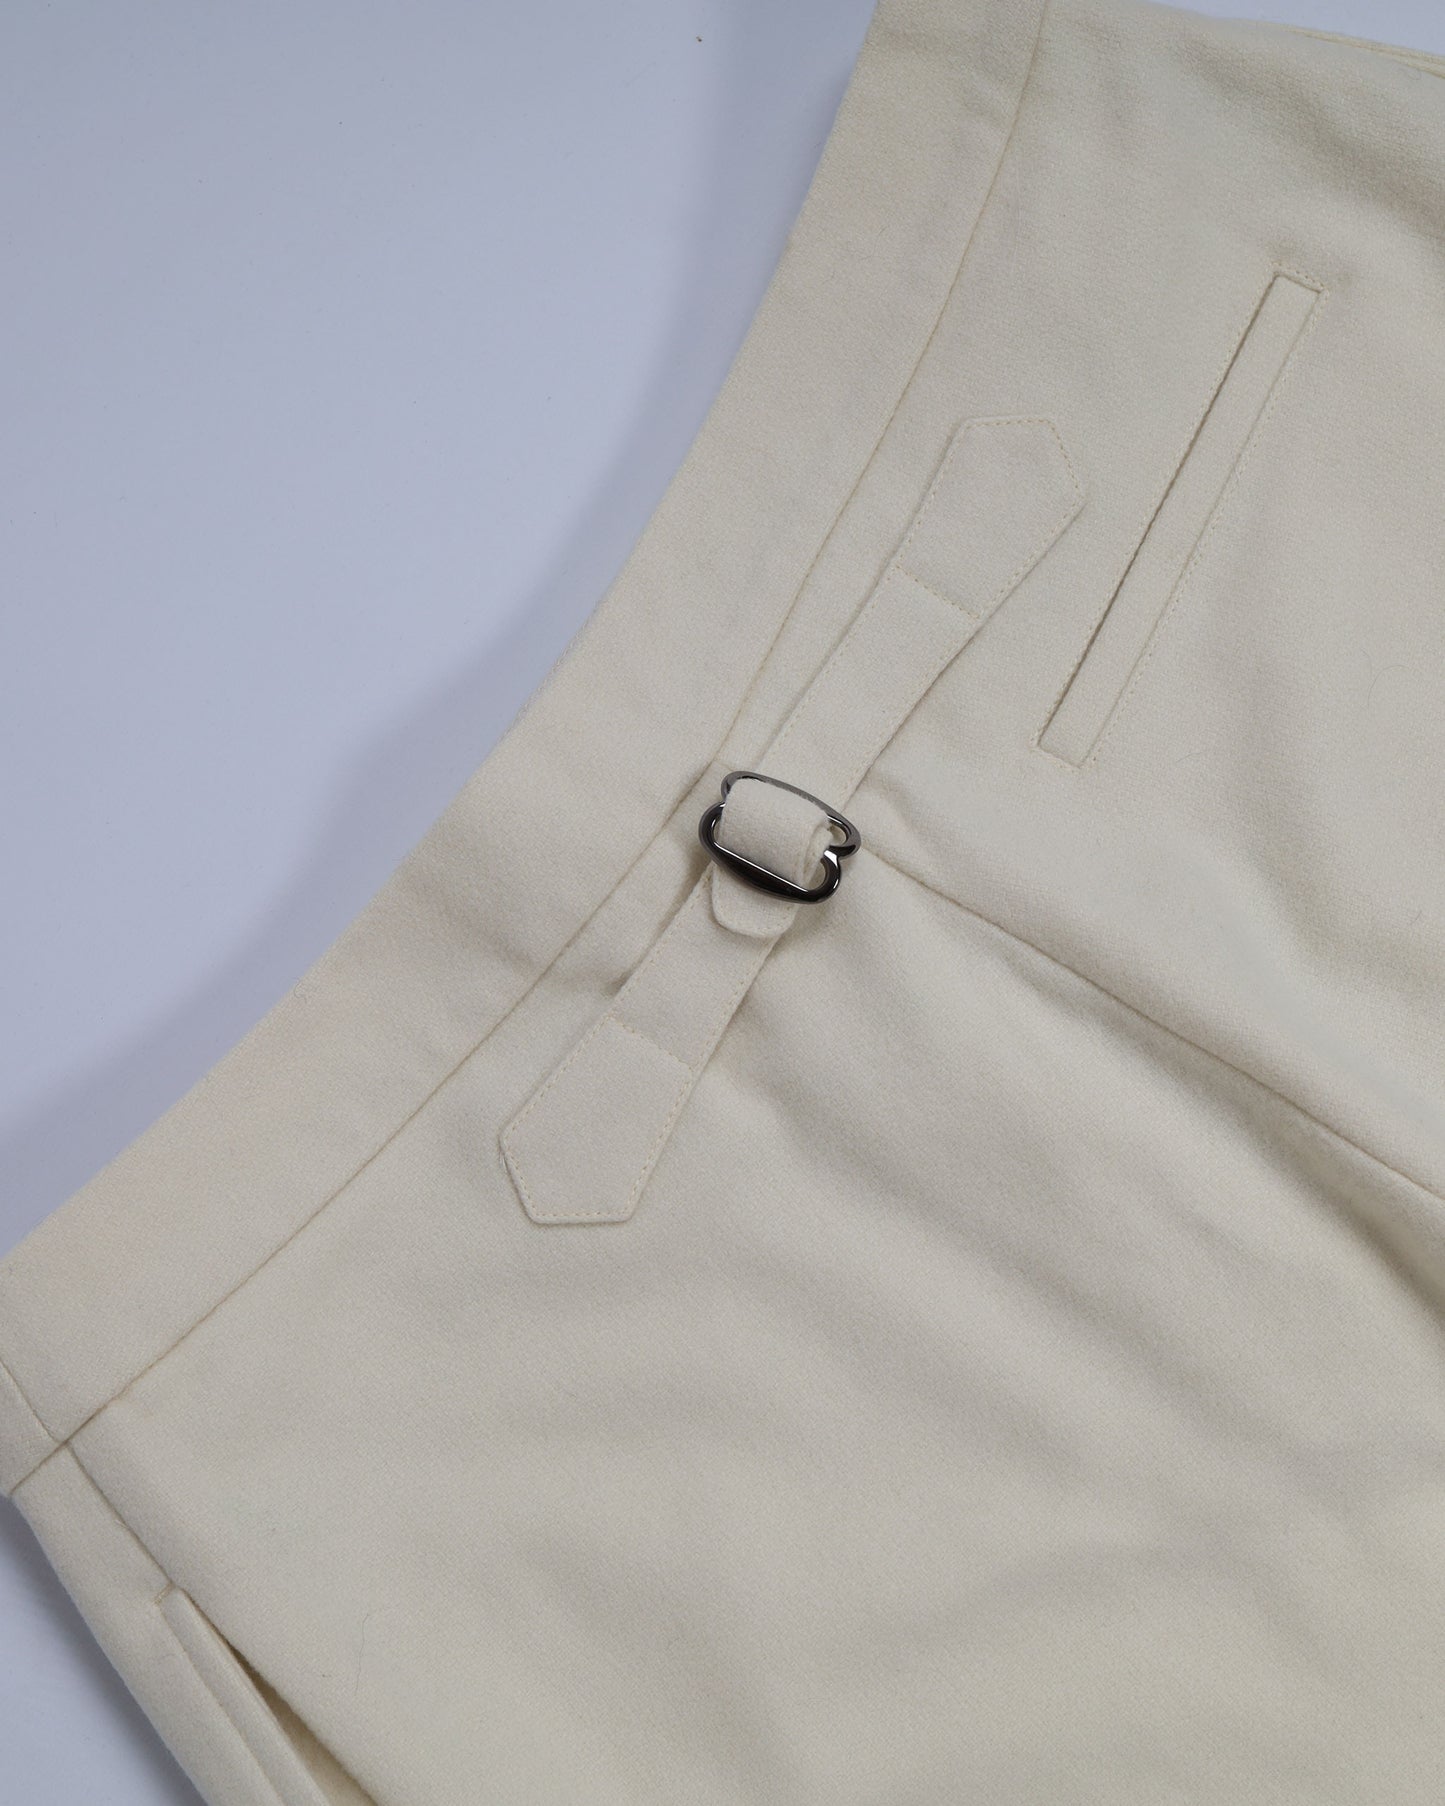 Vivienne Westwood Harris Tweed Trousers Cream 42